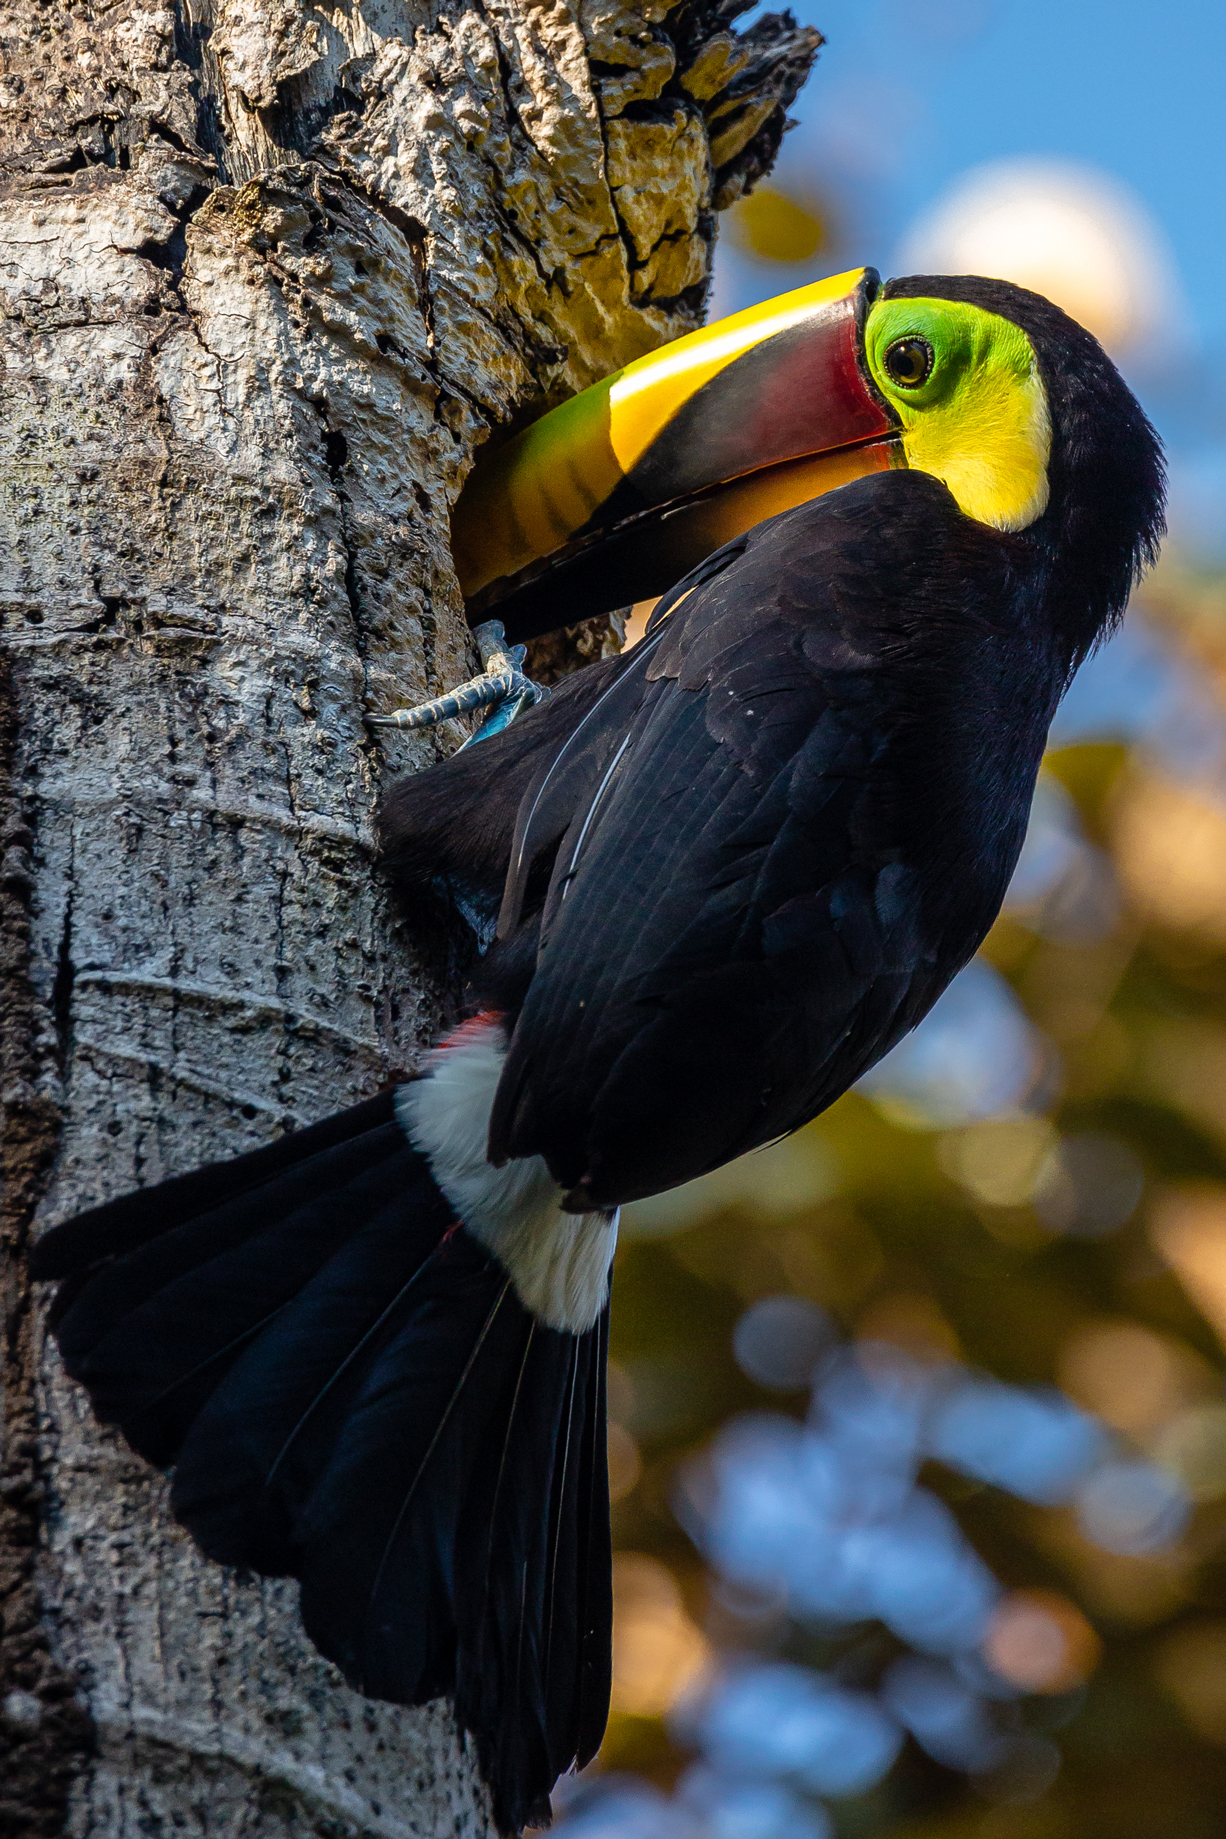 Chestnut Mandibled Toucan Raiding a Woodpecker Nest